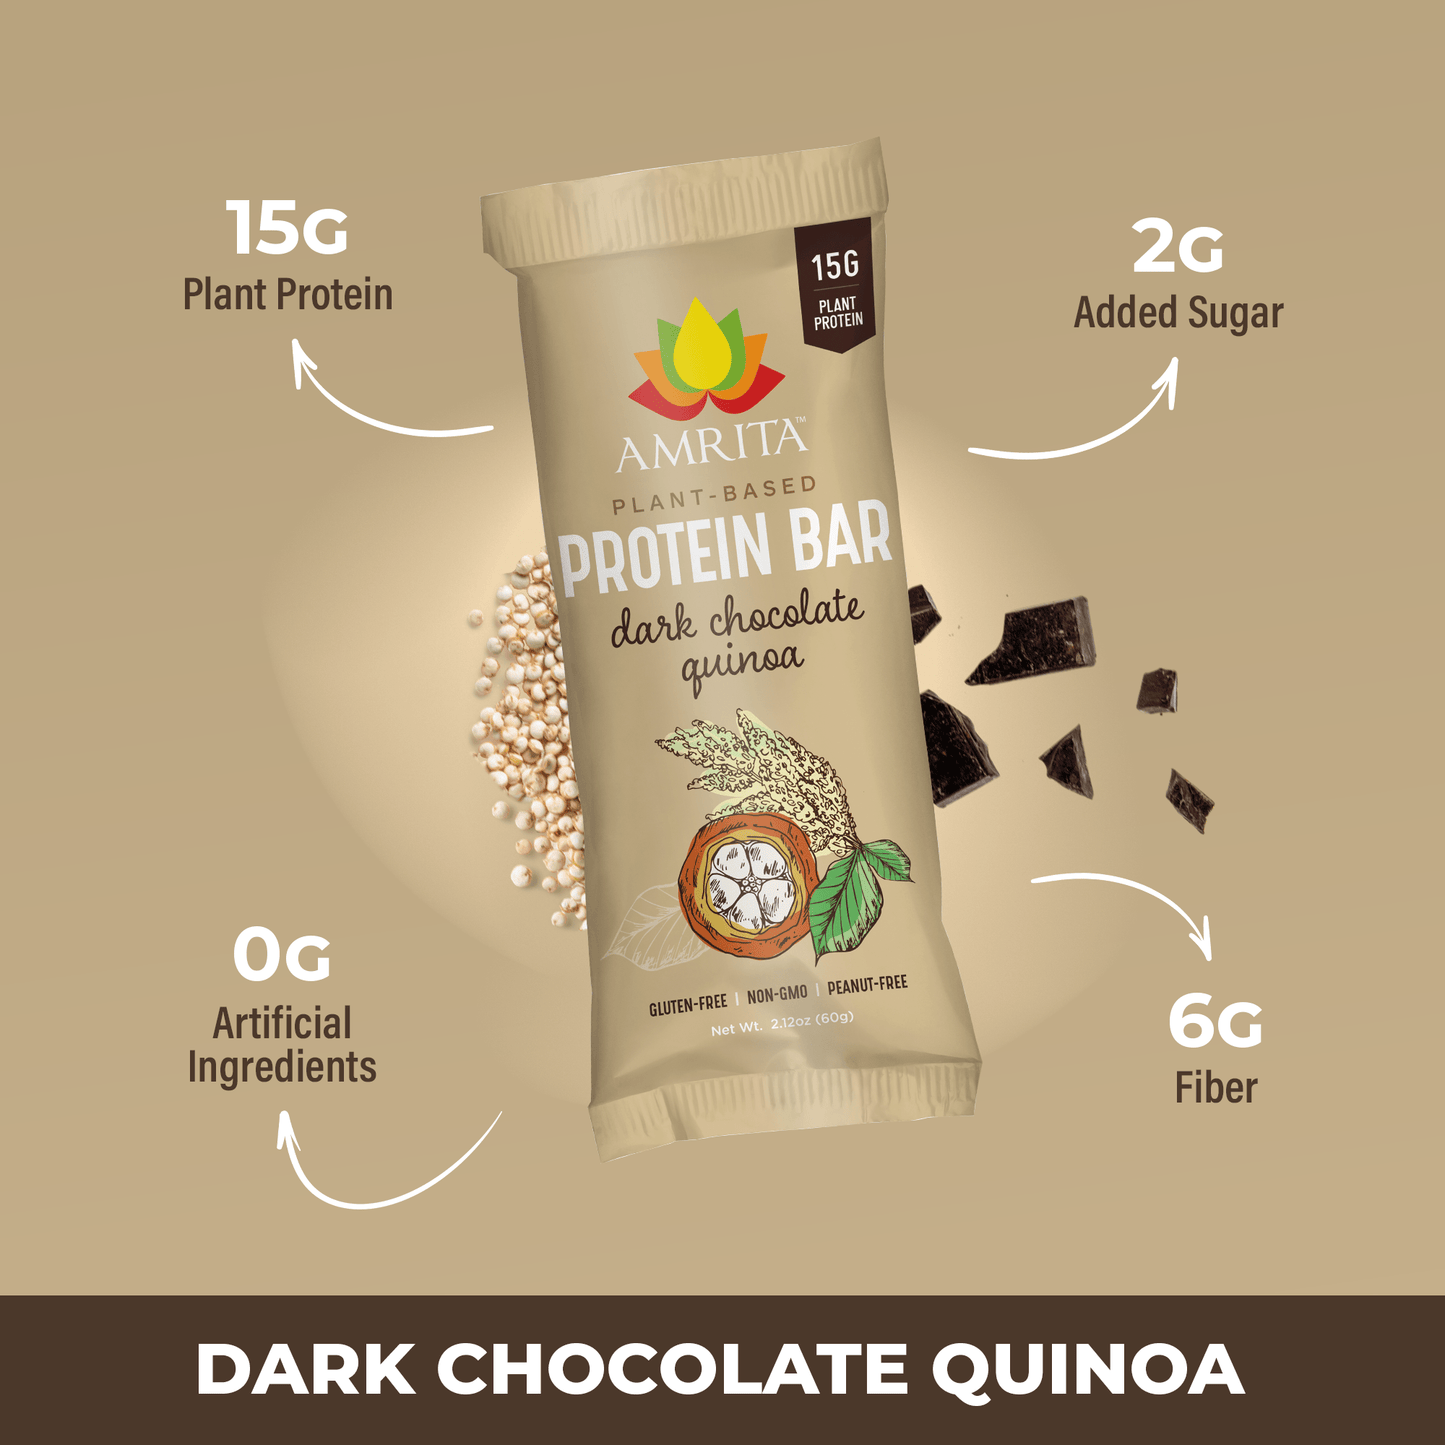 Dark Chocolate Quinoa High Protein Bars - 15g plant protein, 2g added sugar, 0g artificial ingredients, 6g fiber